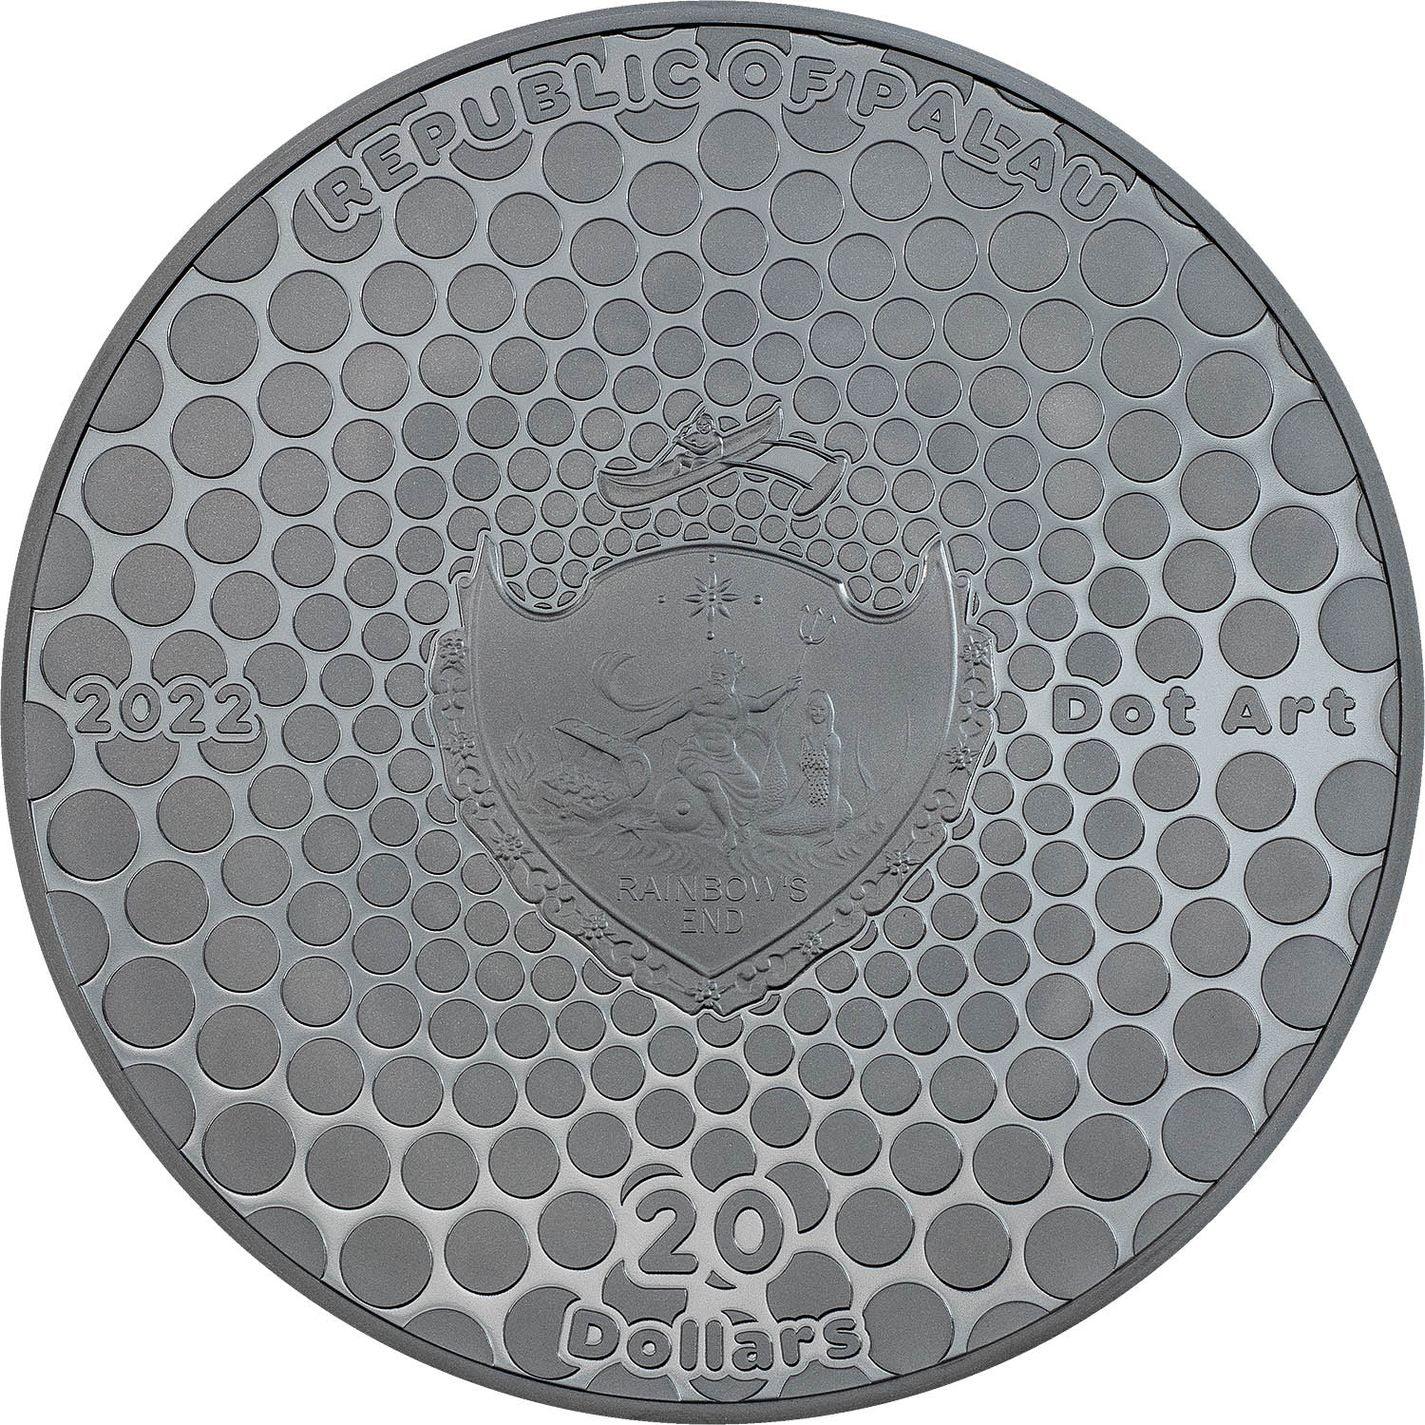 EGYPT PYRAMID Dot Art 3 Oz Silver Coin $20 Palau 2022 Collectible Coin